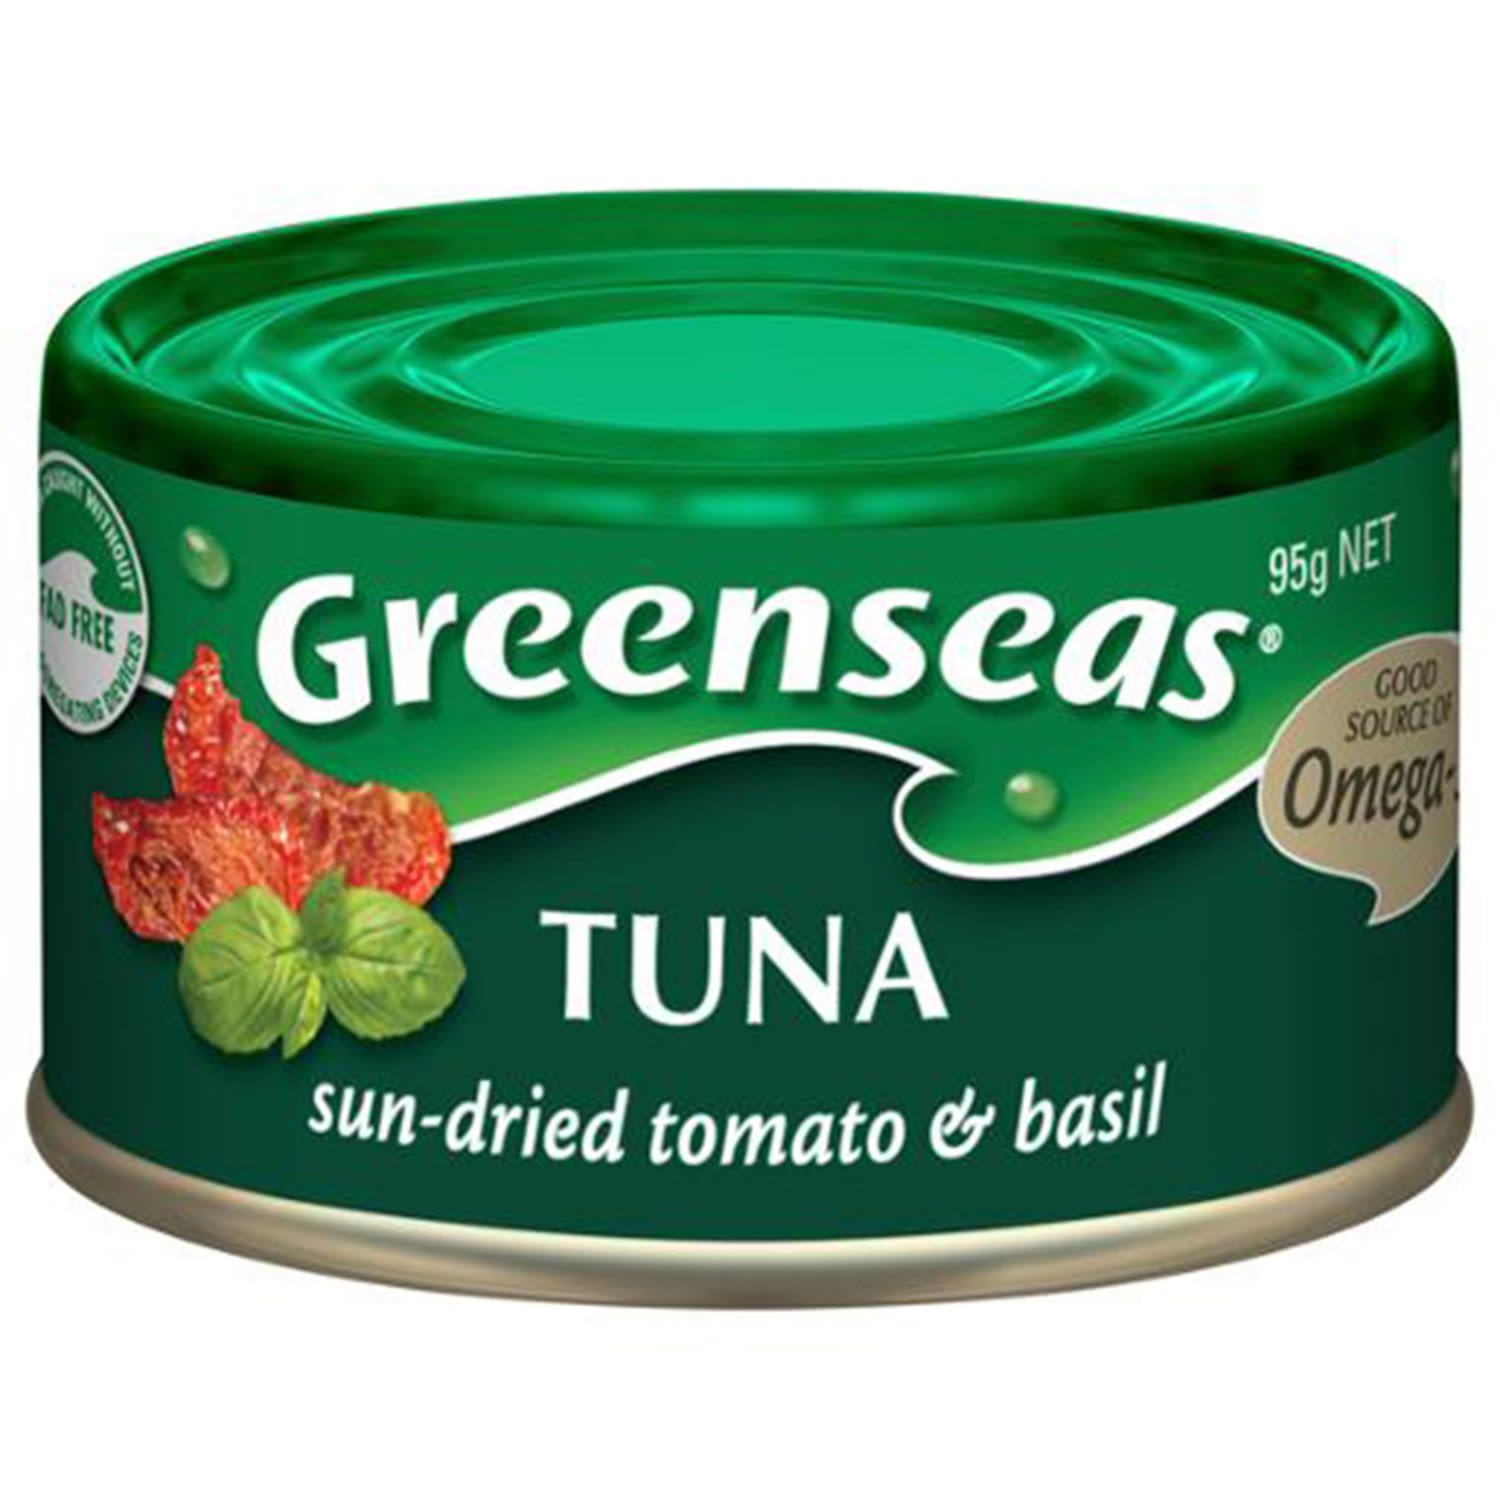 Greenseas Tuna Sun-Dried Tomato & Basil, 95 Gram